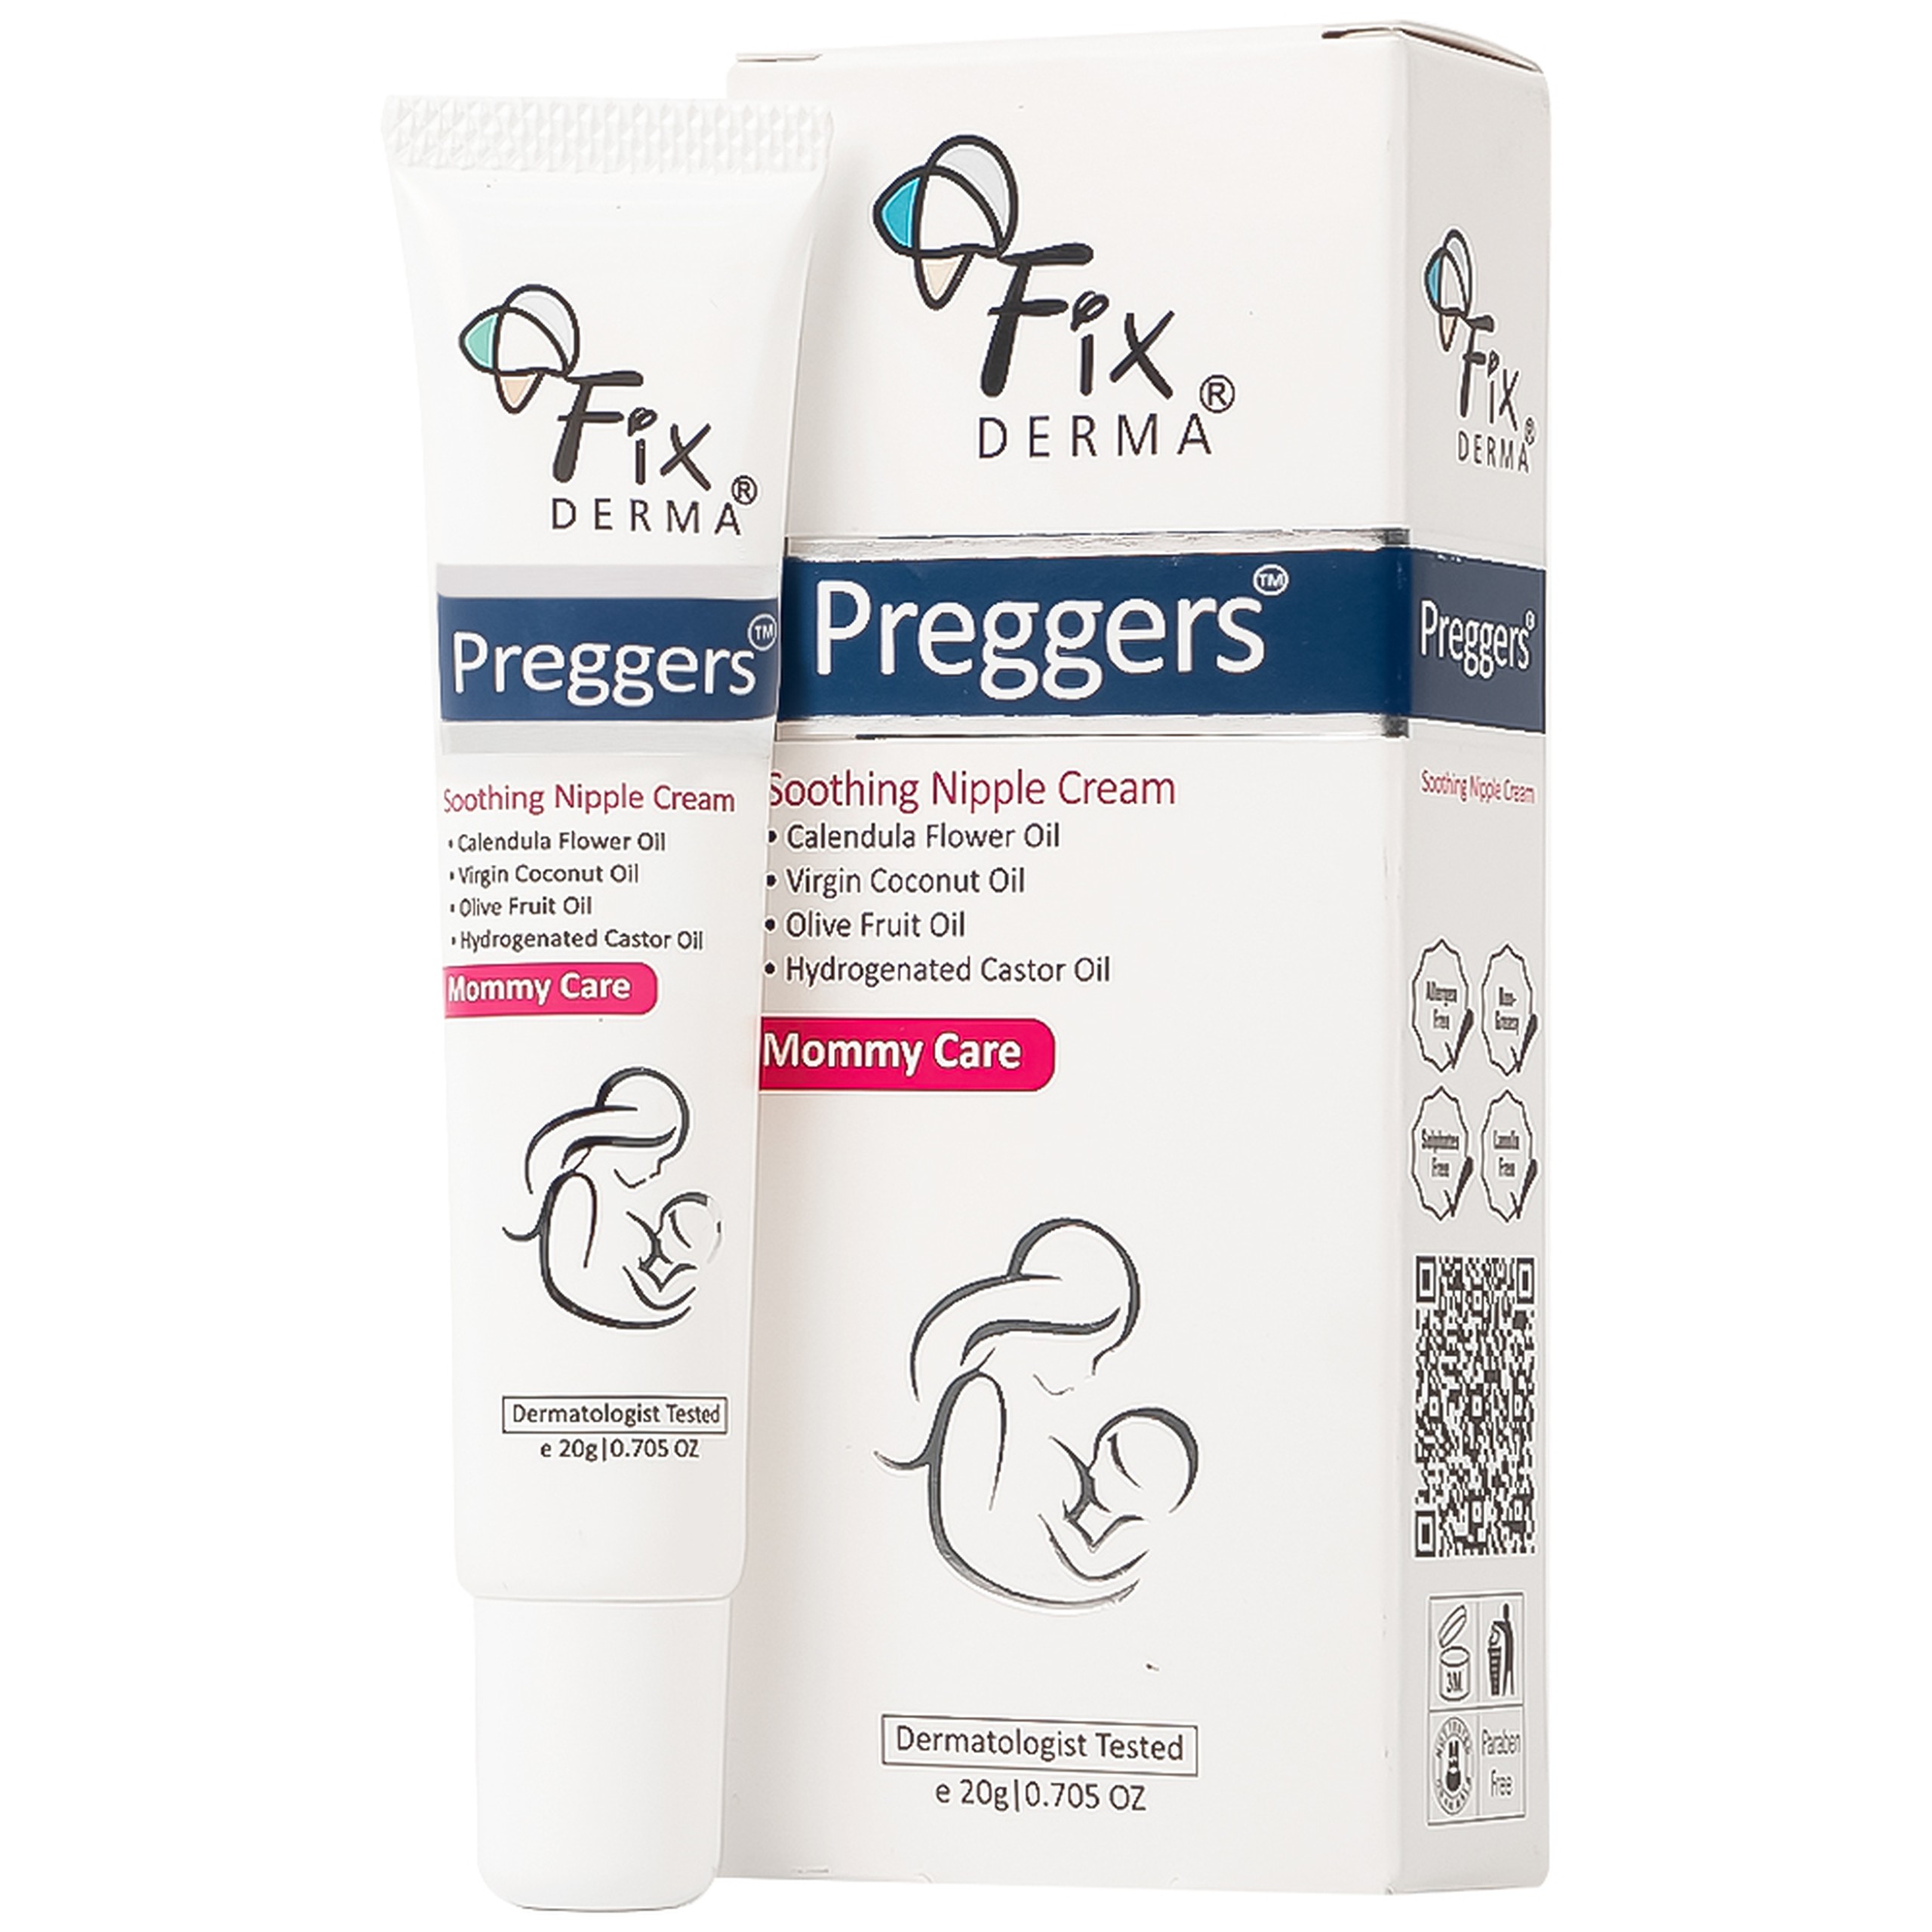 Kem Preggers Soothing Nipple Cream Fixderma hỗ trợ dưỡng ẩm, phục hồi, làm dịu núm vú bị khô (20g)